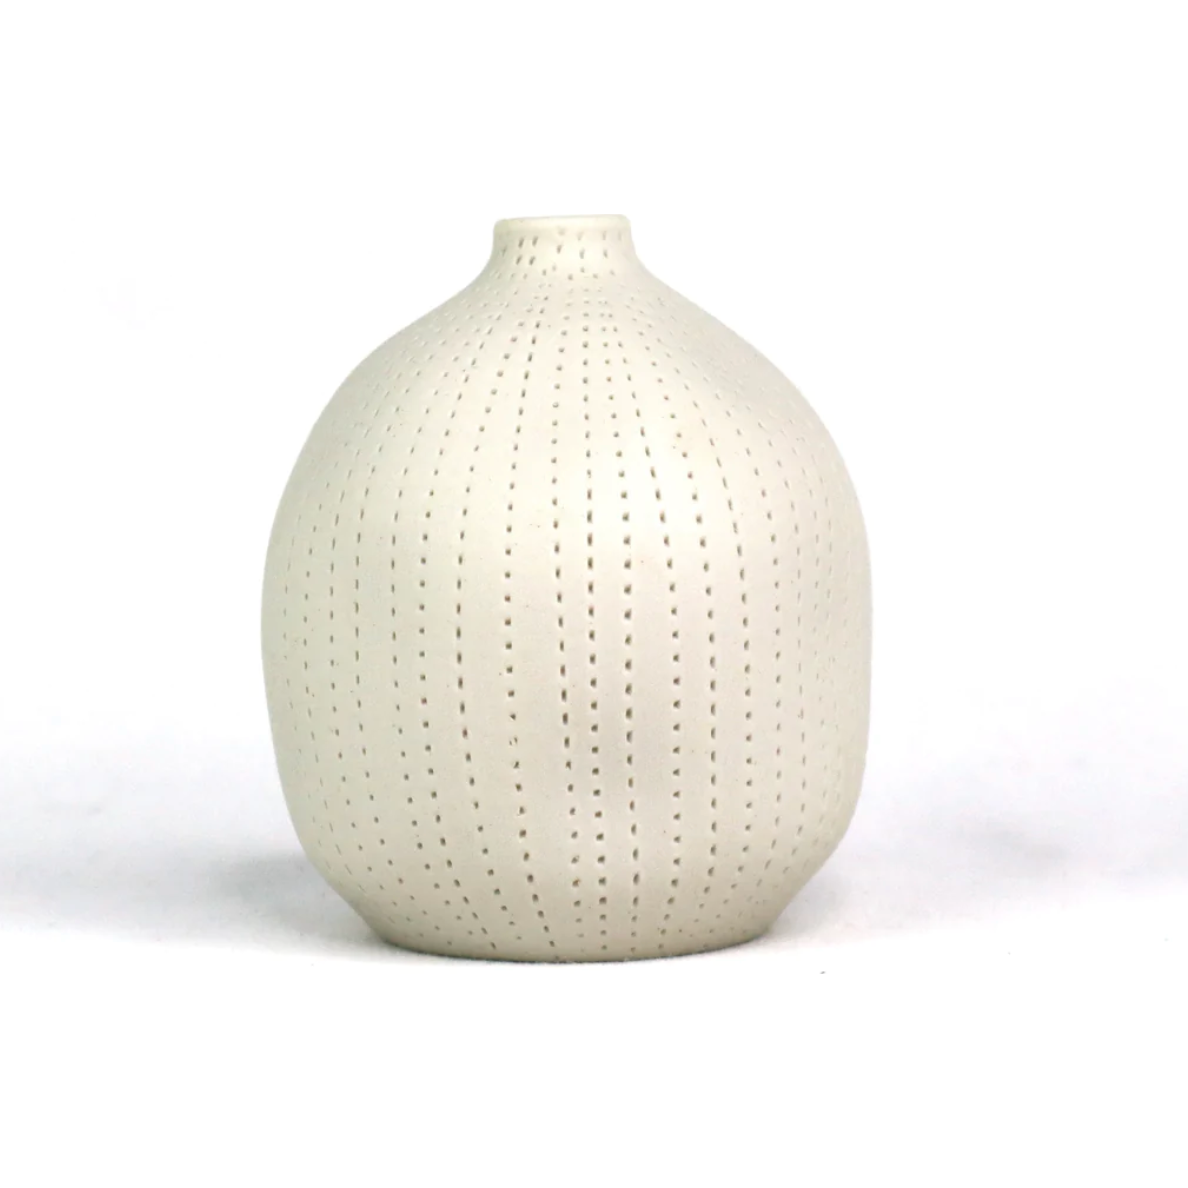 Cucumis Vase White Small